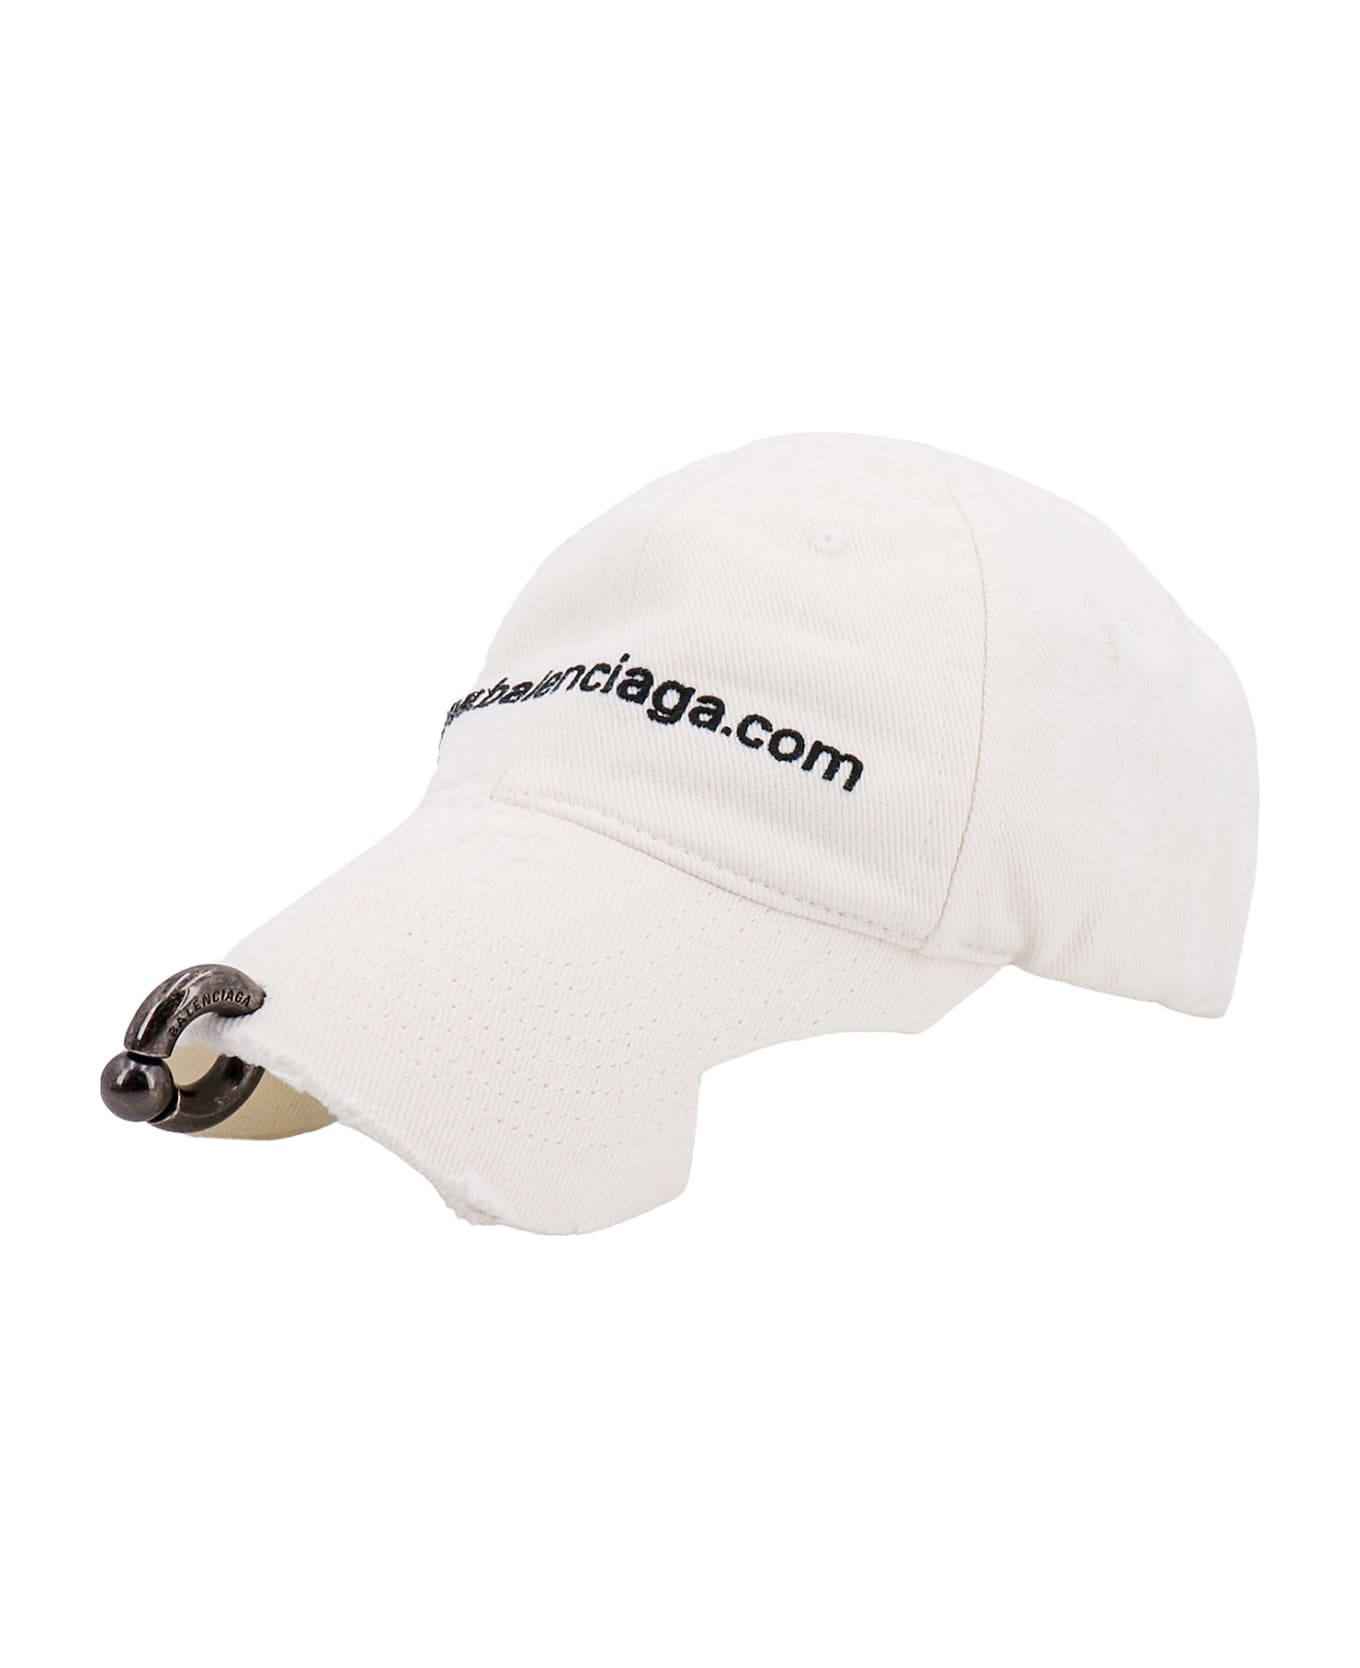 Balenciaga Hat - White 帽子